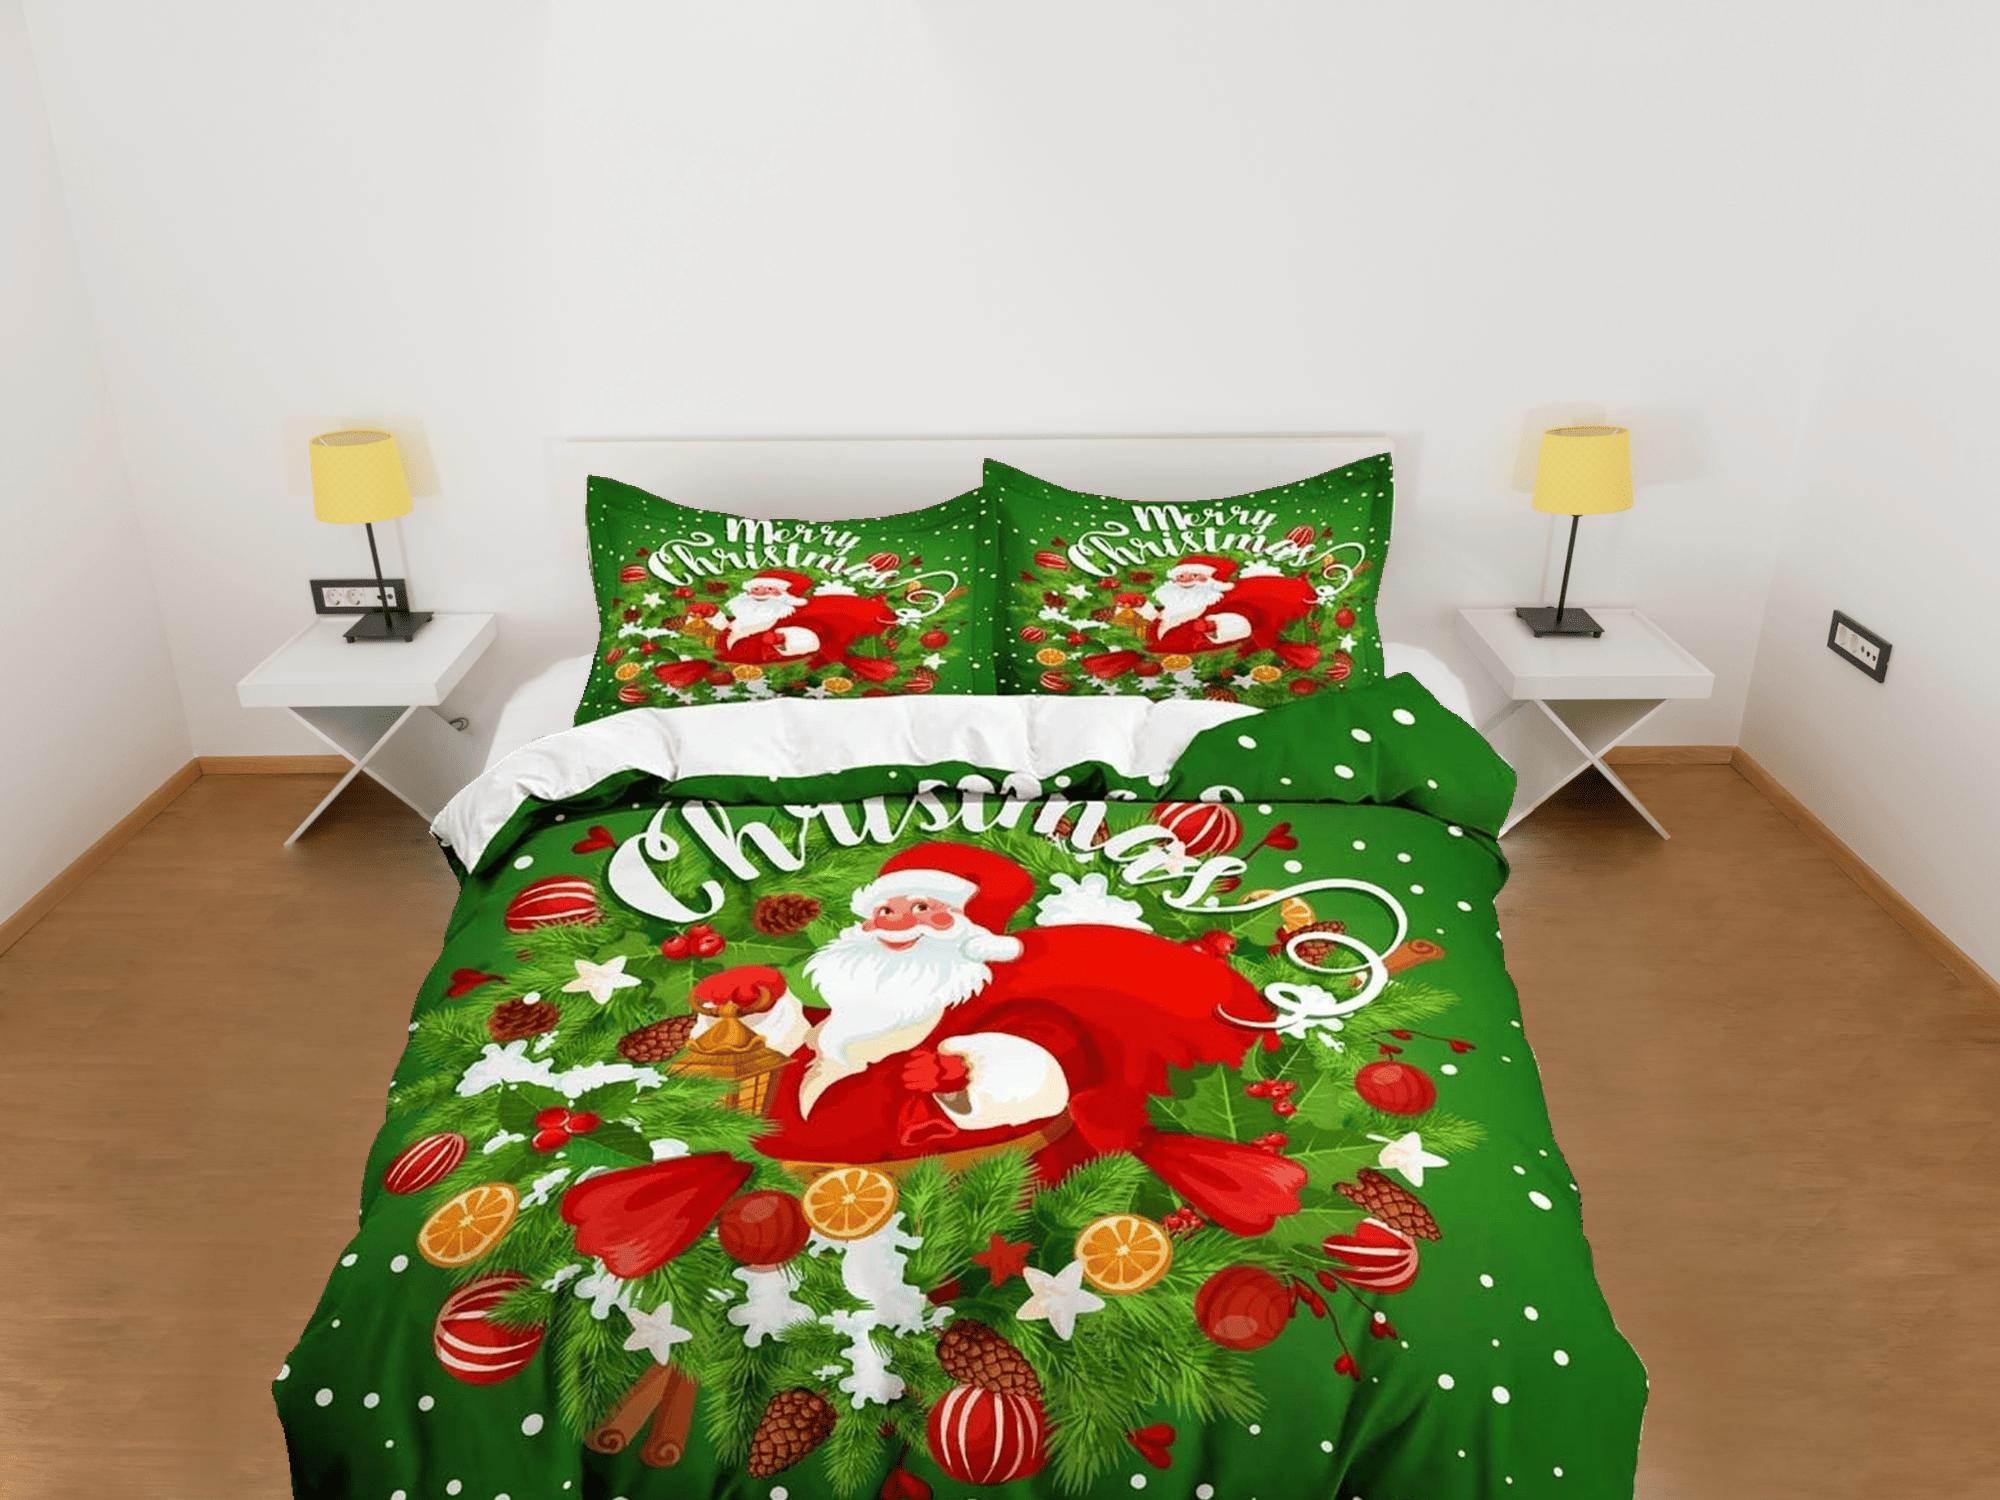 daintyduvet Santa Claus Christmas wreath green bedding & pillowcase holiday gift duvet cover king queen toddler bedding baby Christmas farmhouse decor